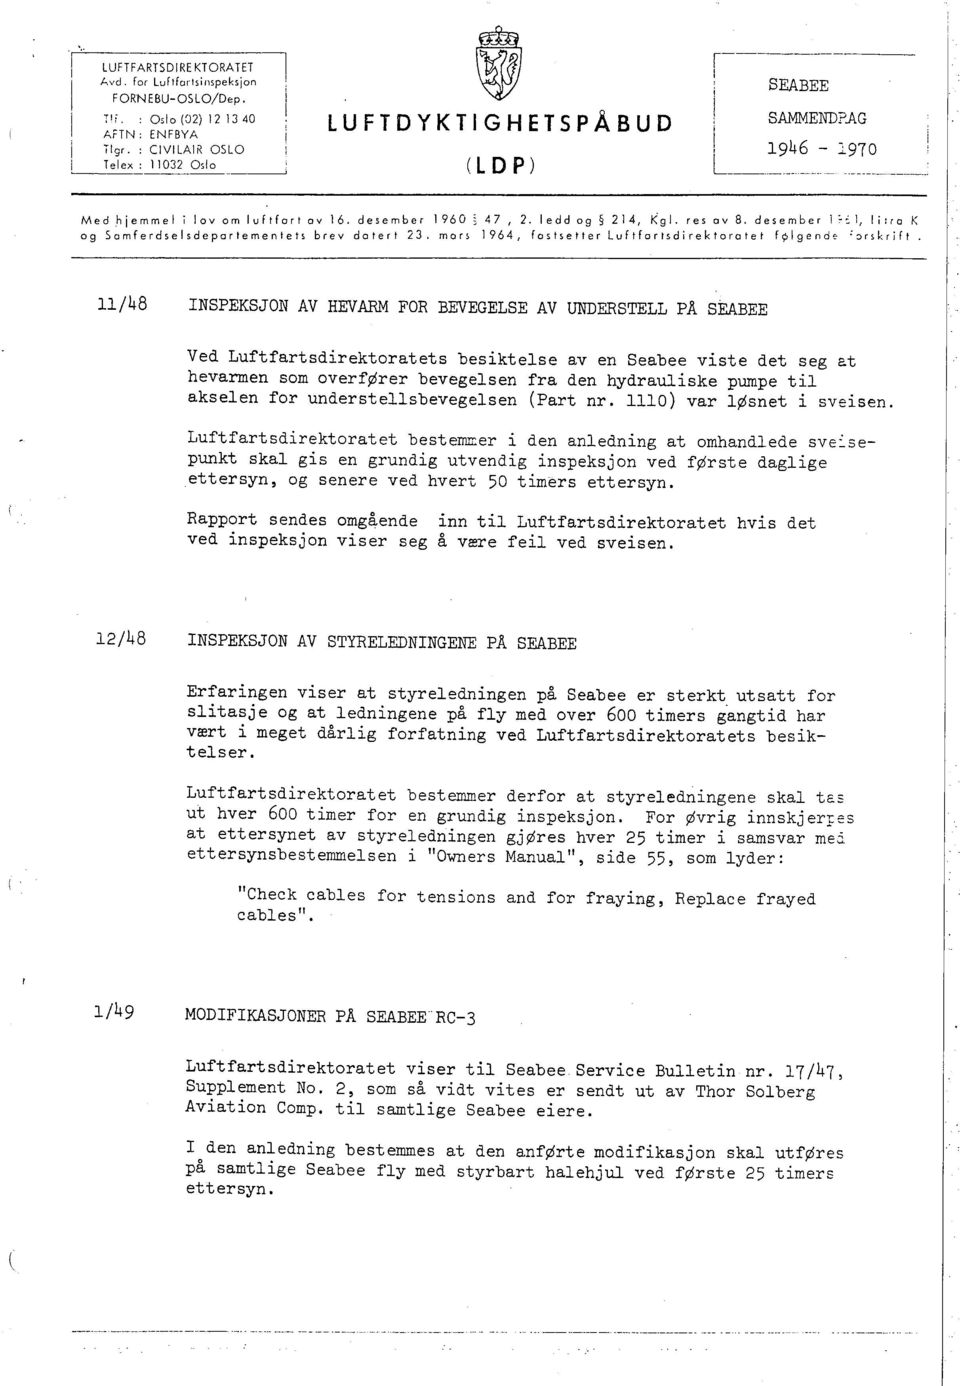 a K og Samferdselsdepartementets brev dalerl 23. mon 1964, faslsetter Luffartsdrektaralet fç\lgende 'onkrft.